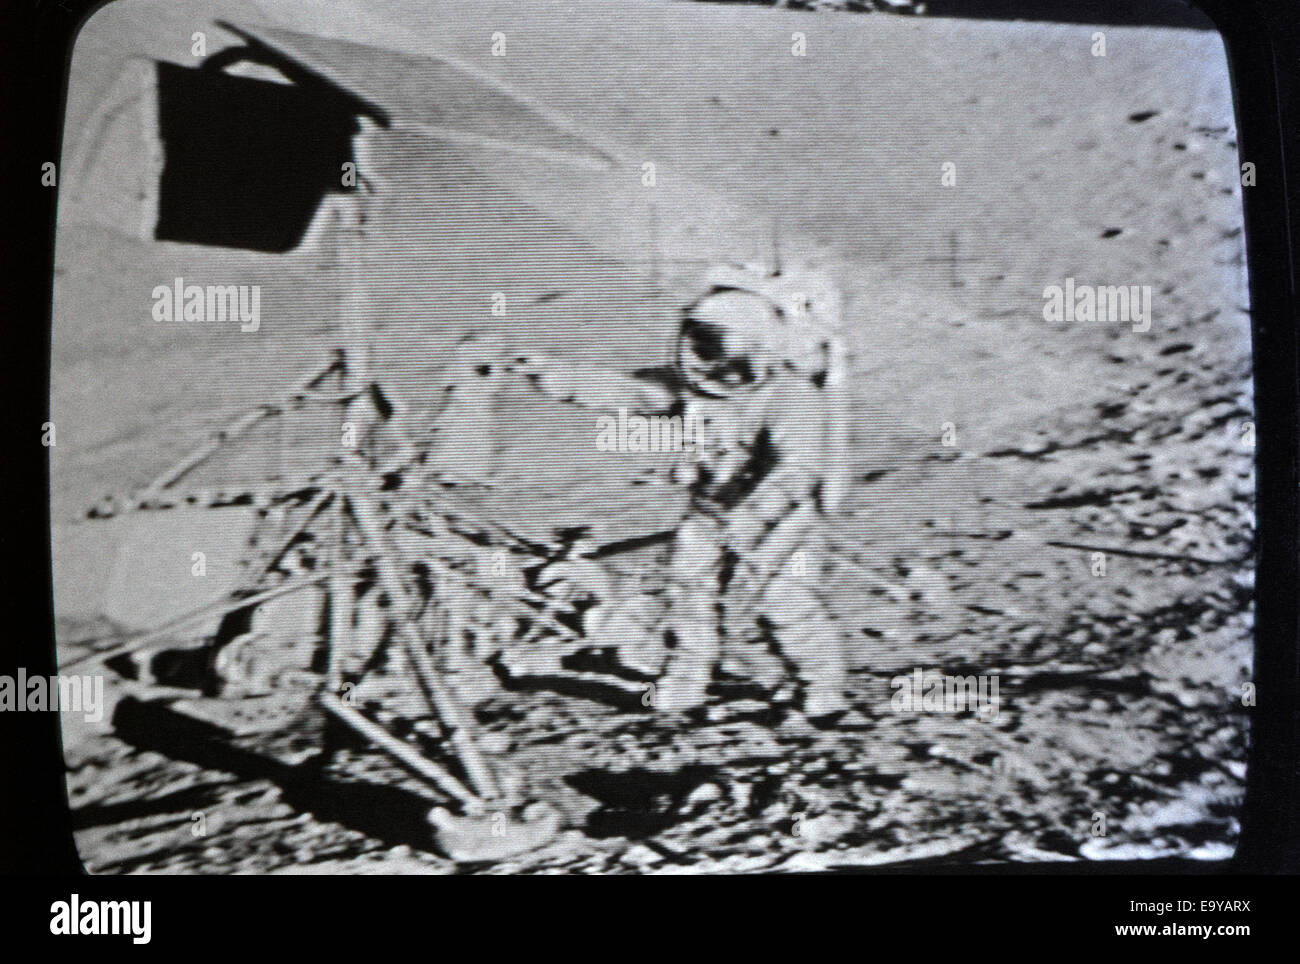 Moon landing 20 juillet 1969 astronaut photographié en temps réel sur l'écran de télévision à Los Angeles, Californie KATHY DEWITT Banque D'Images